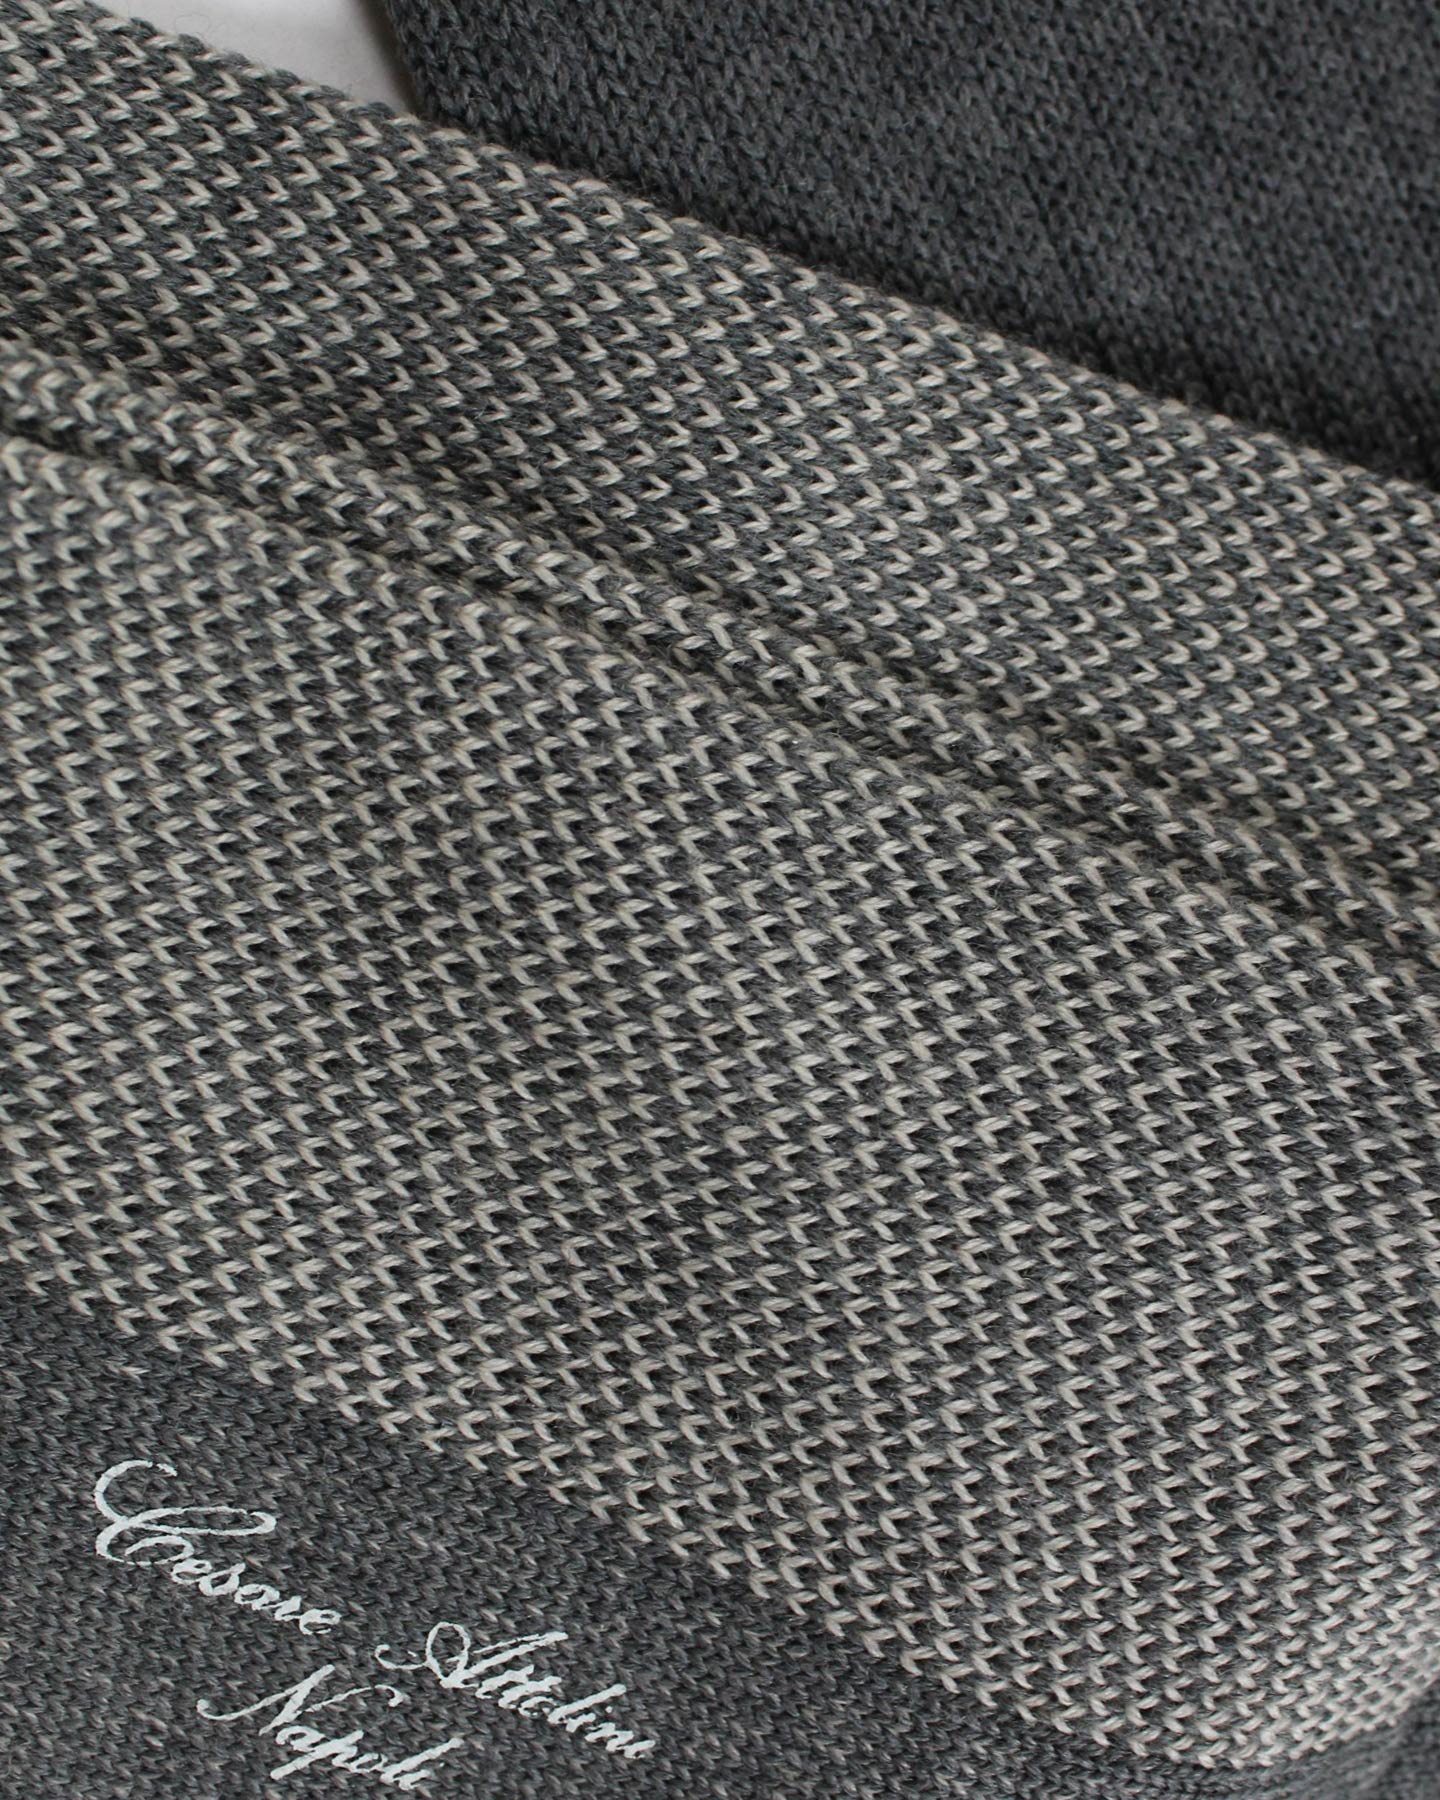 Cesare Attolini Wool Socks Gray Design - Over The Calf M SALE